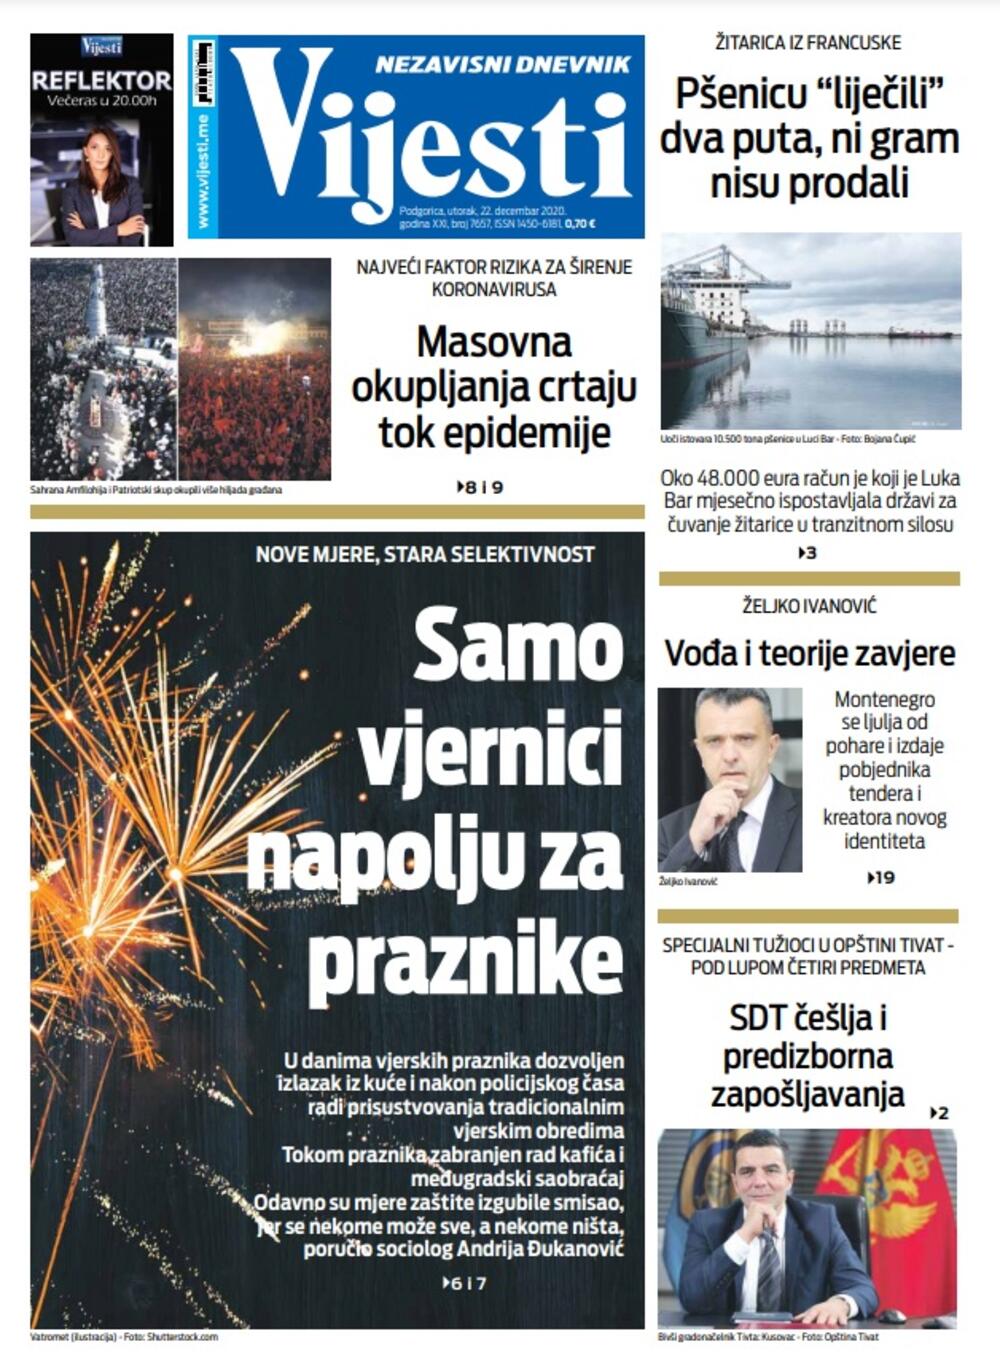 Naslovna strana "Vijesti" za utorak 22. decembar 2020. godine, Foto: Vijesti